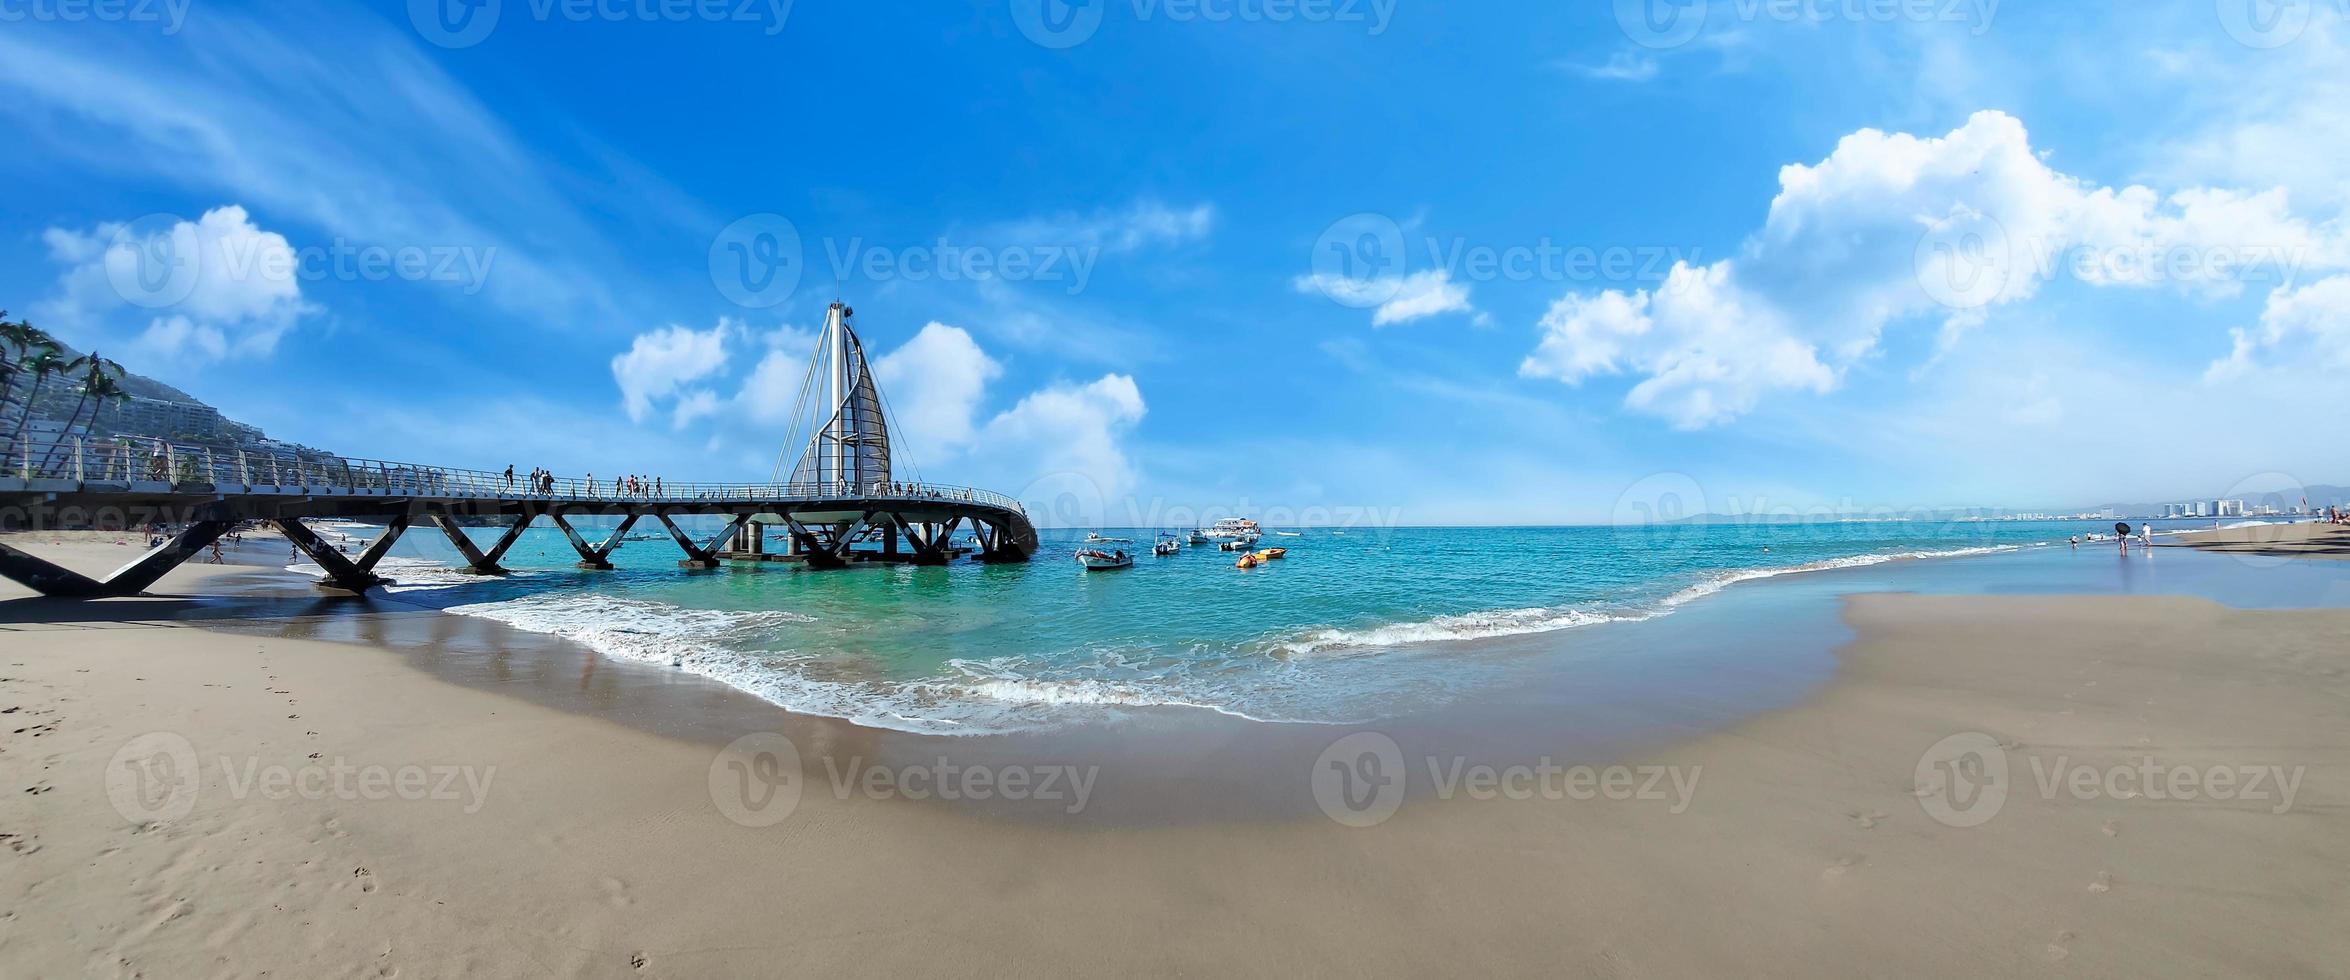 praia e cais de playa de los muertos perto de puerto vallarta malecon, a maior praia pública da cidade foto